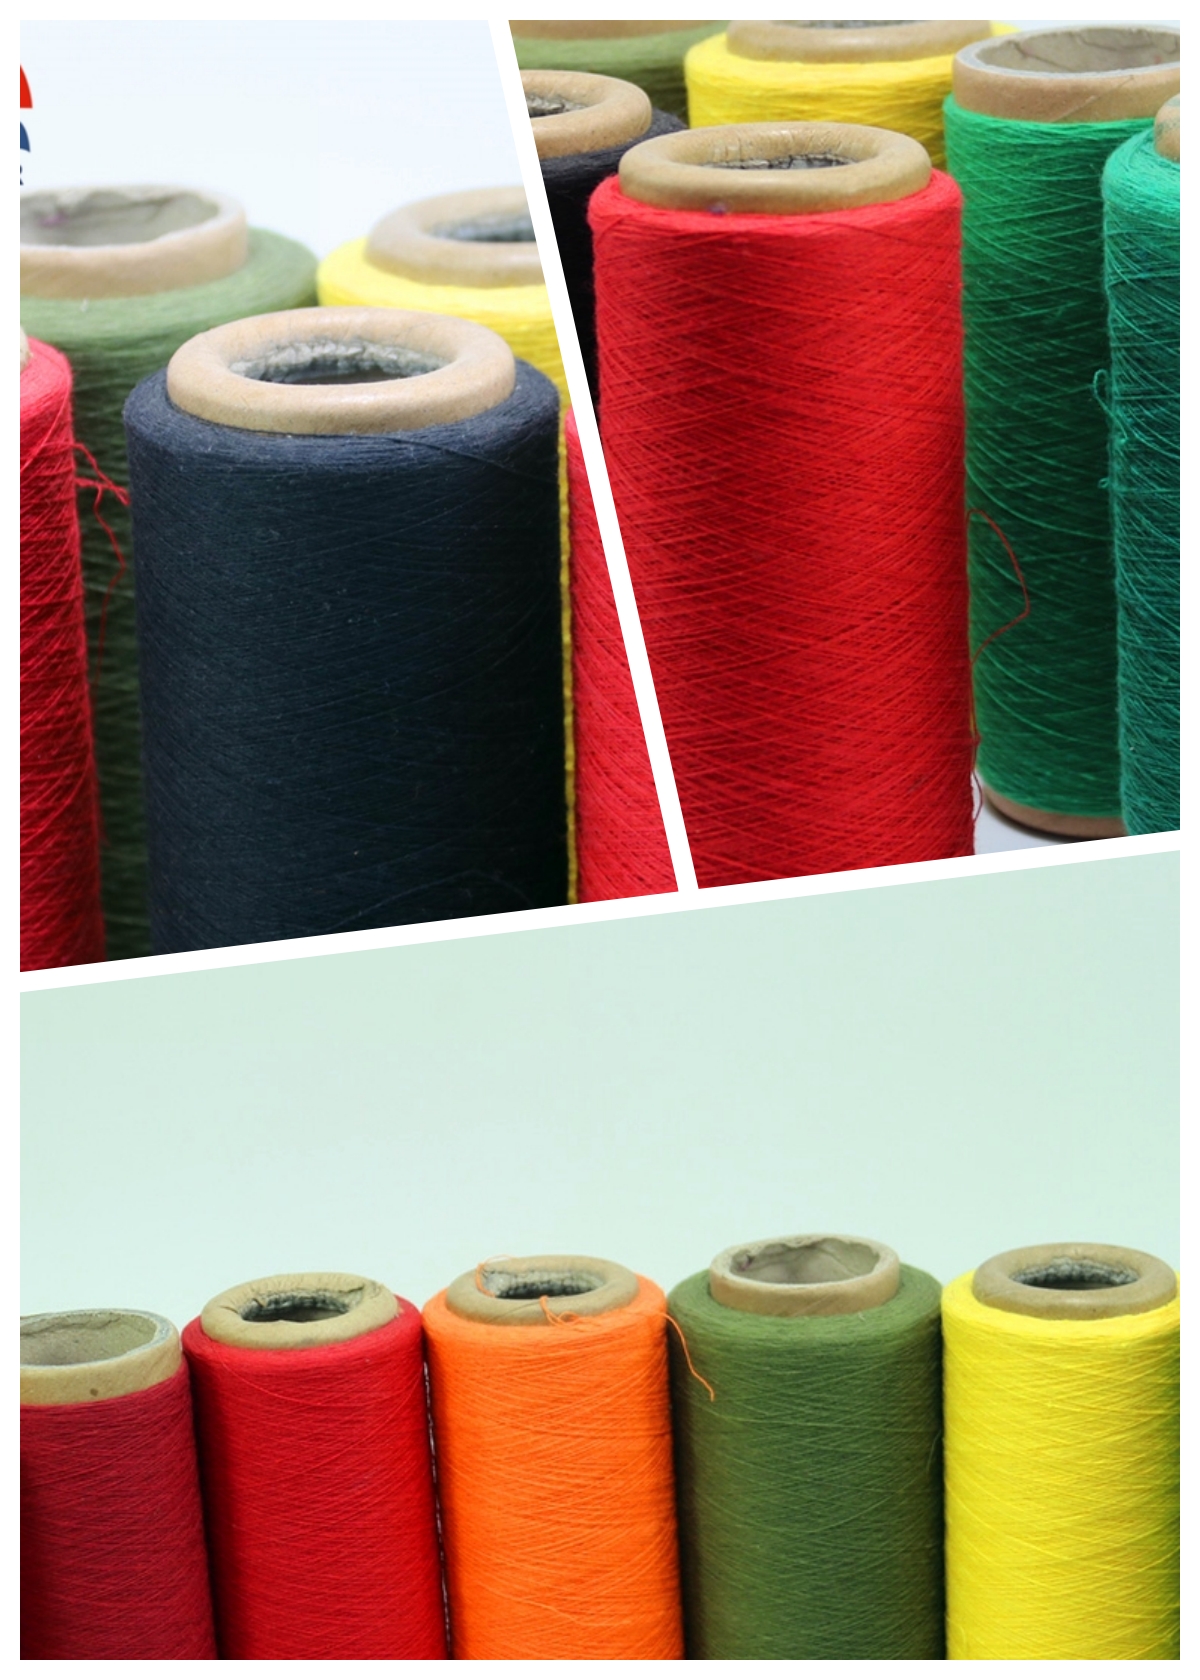 sewing kite thread yarn